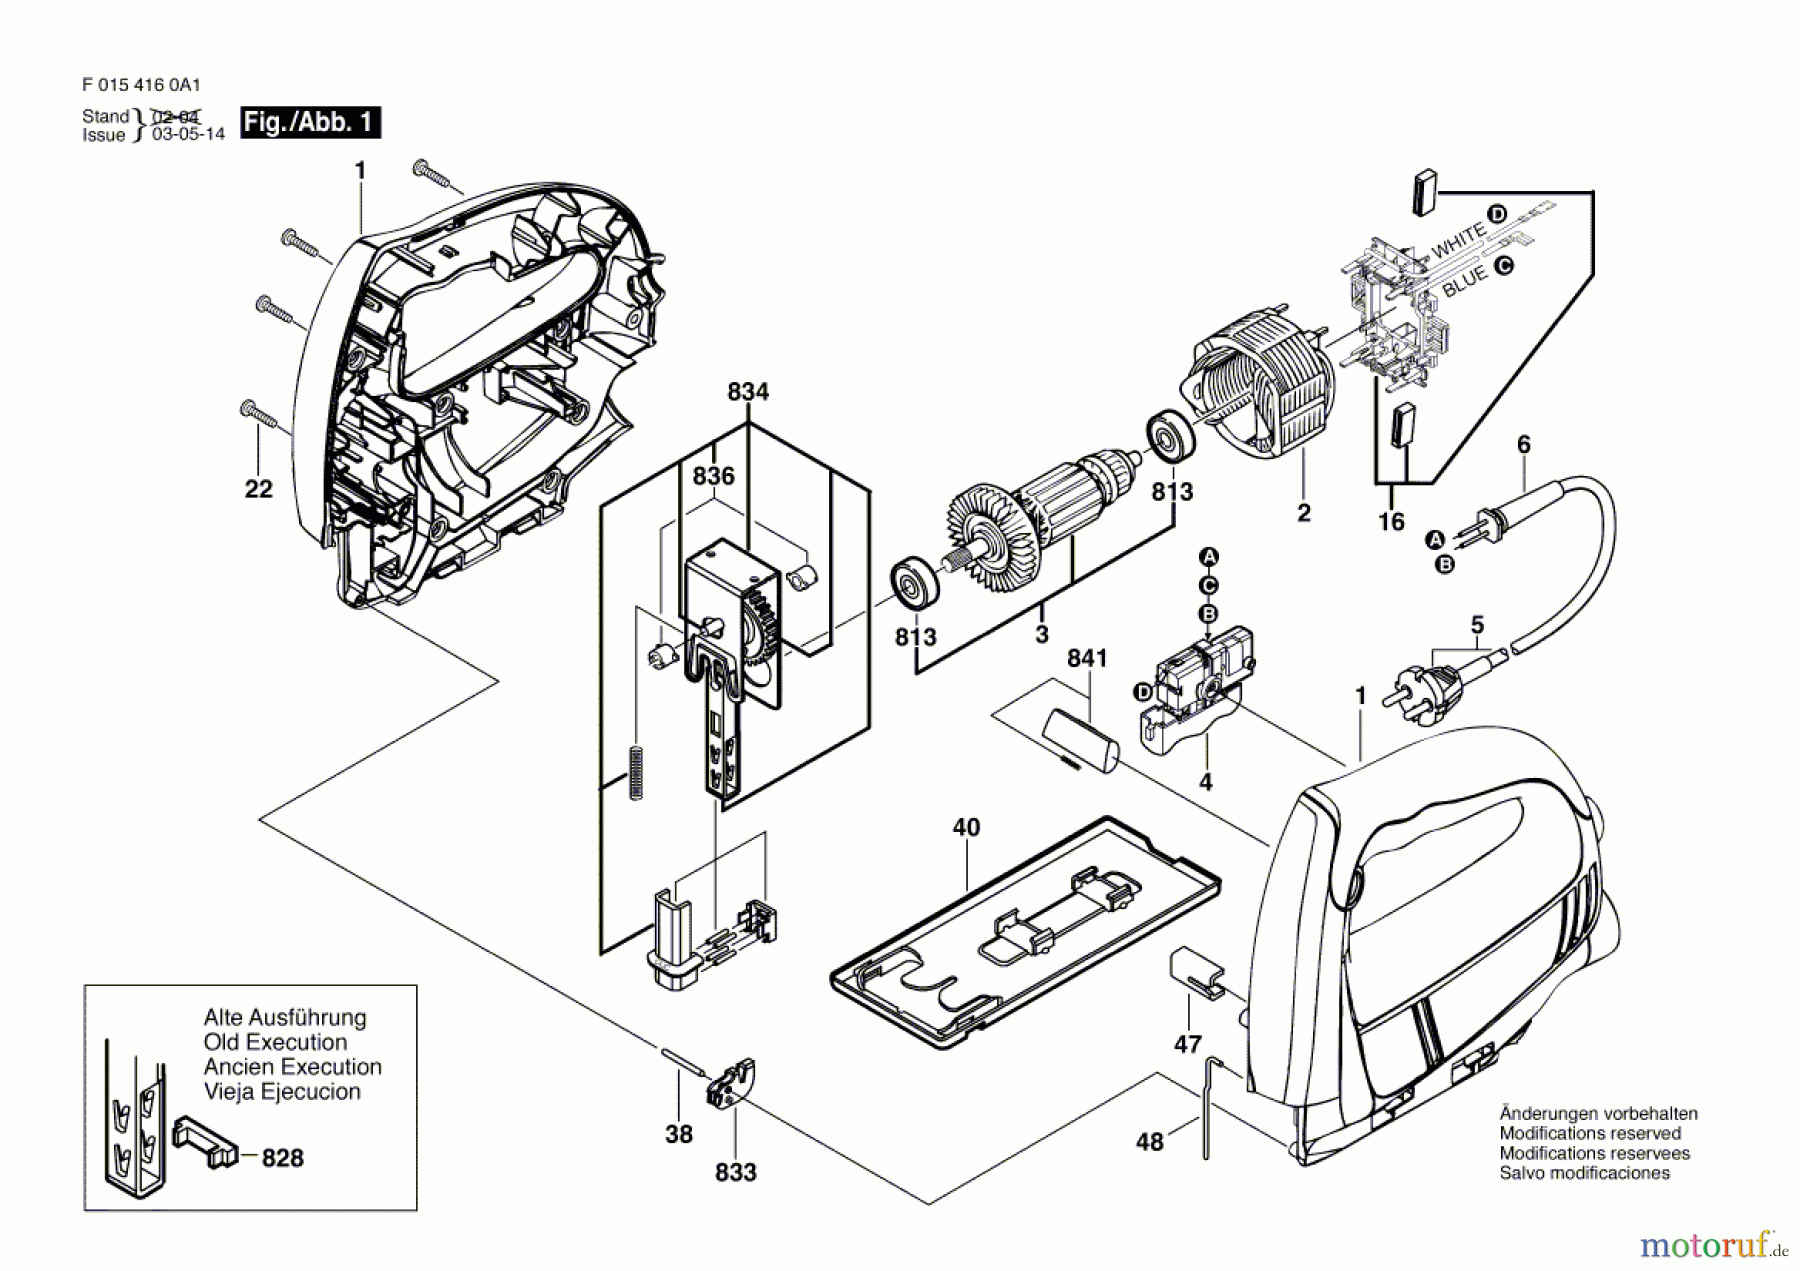  Bosch Werkzeug Stichsäge 4160 Seite 1